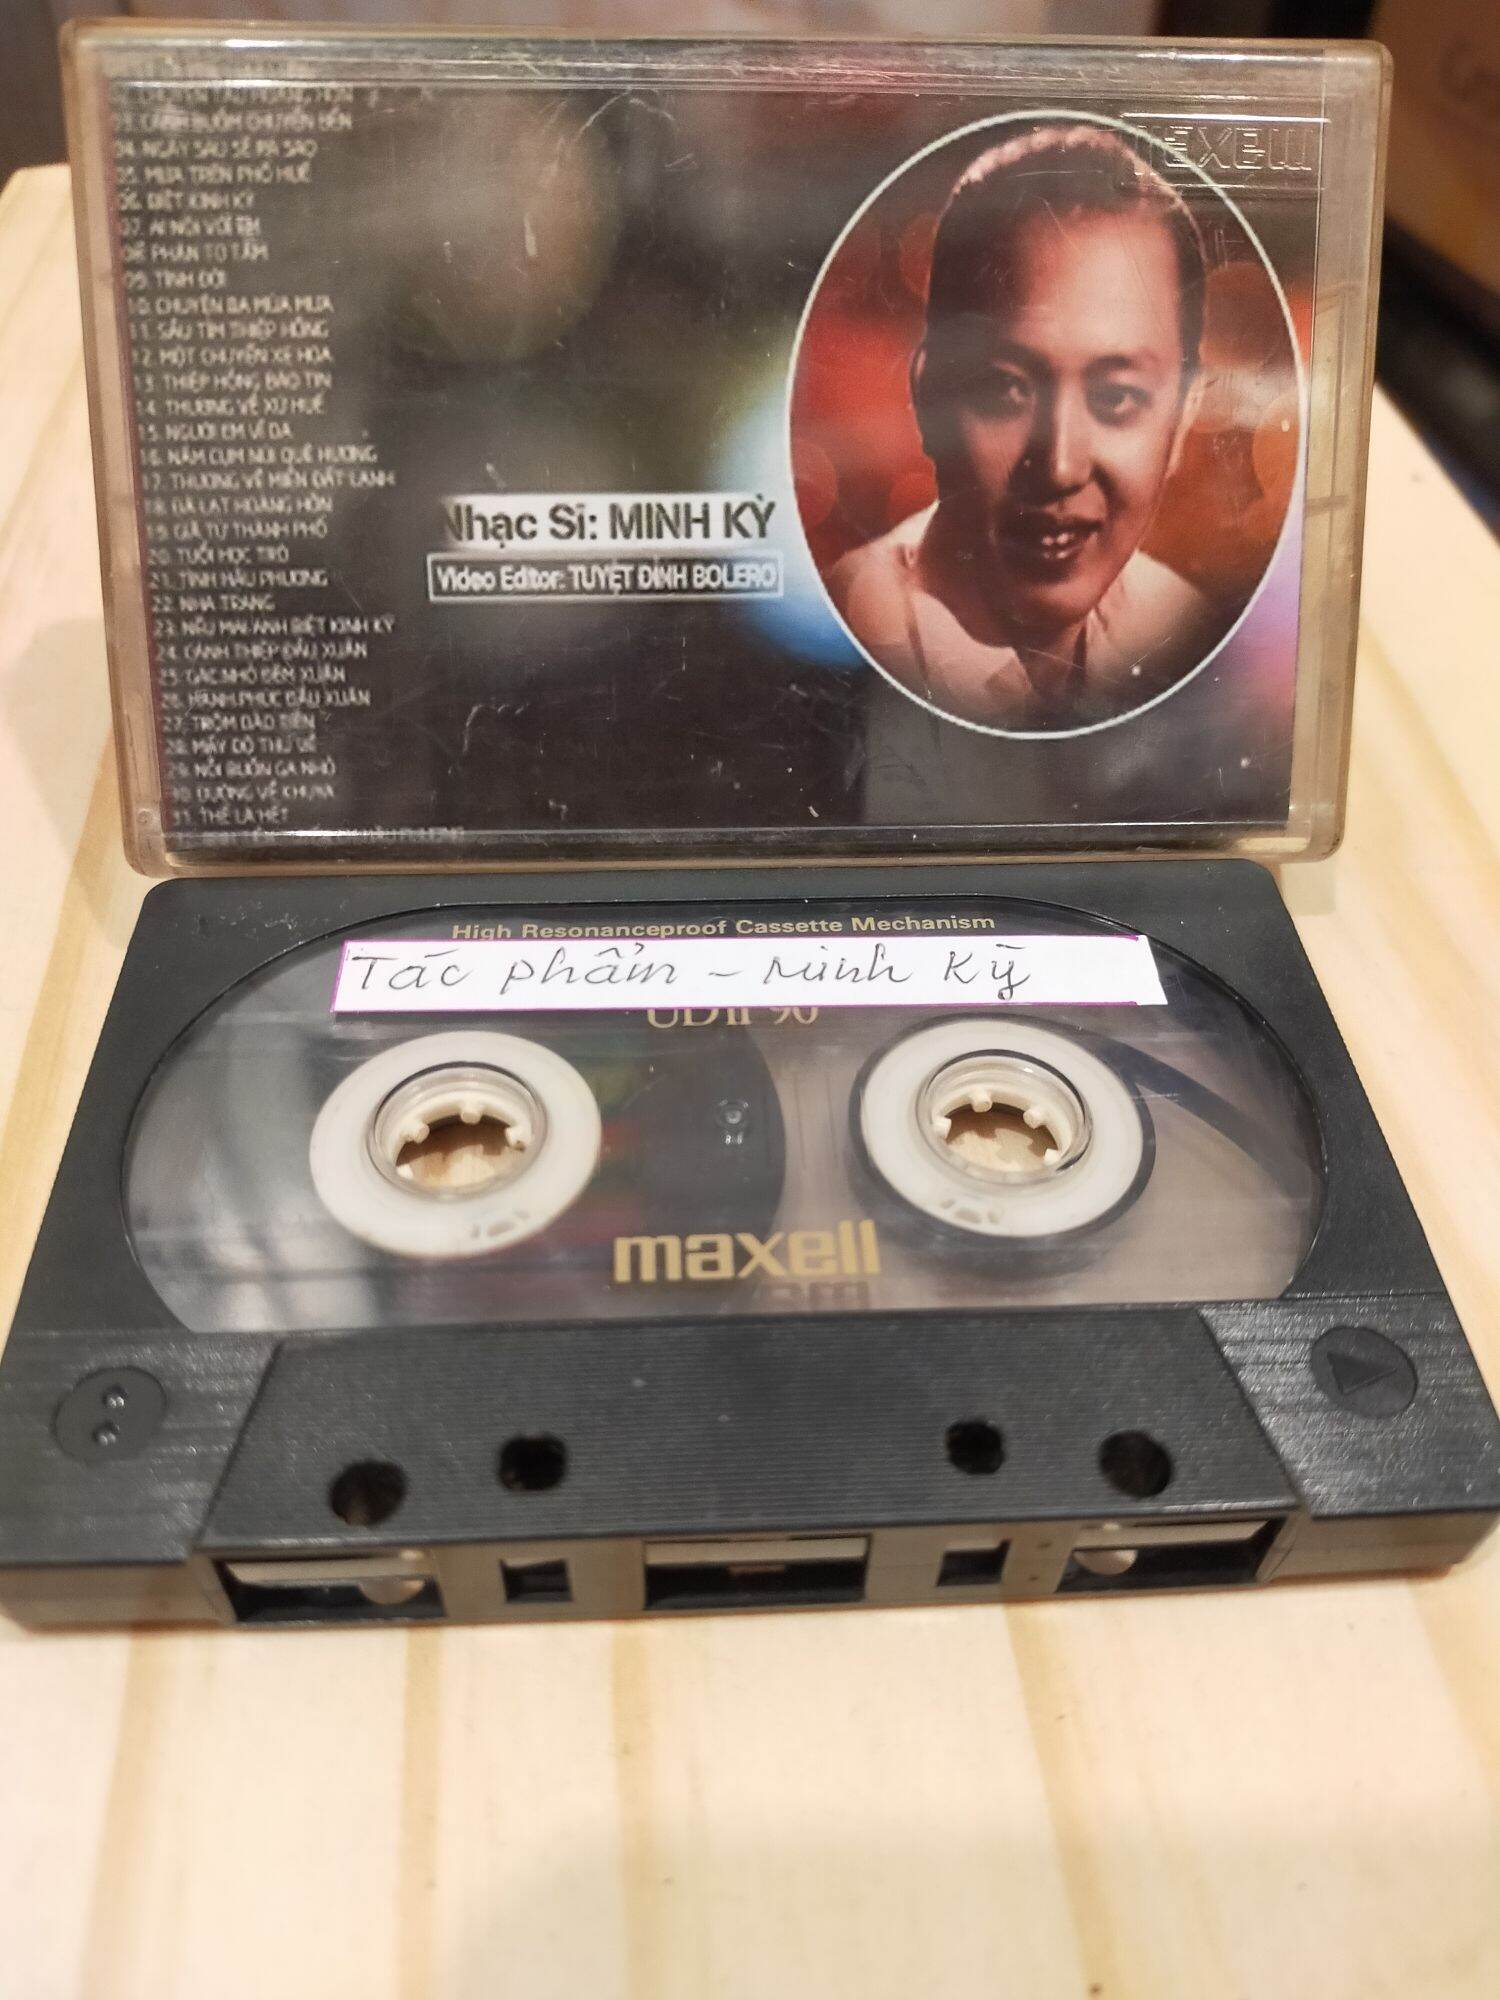 1 băng cassette maxell UD 2 tình khúc Minh Kỳ( lưu ý: đây là băng cũ